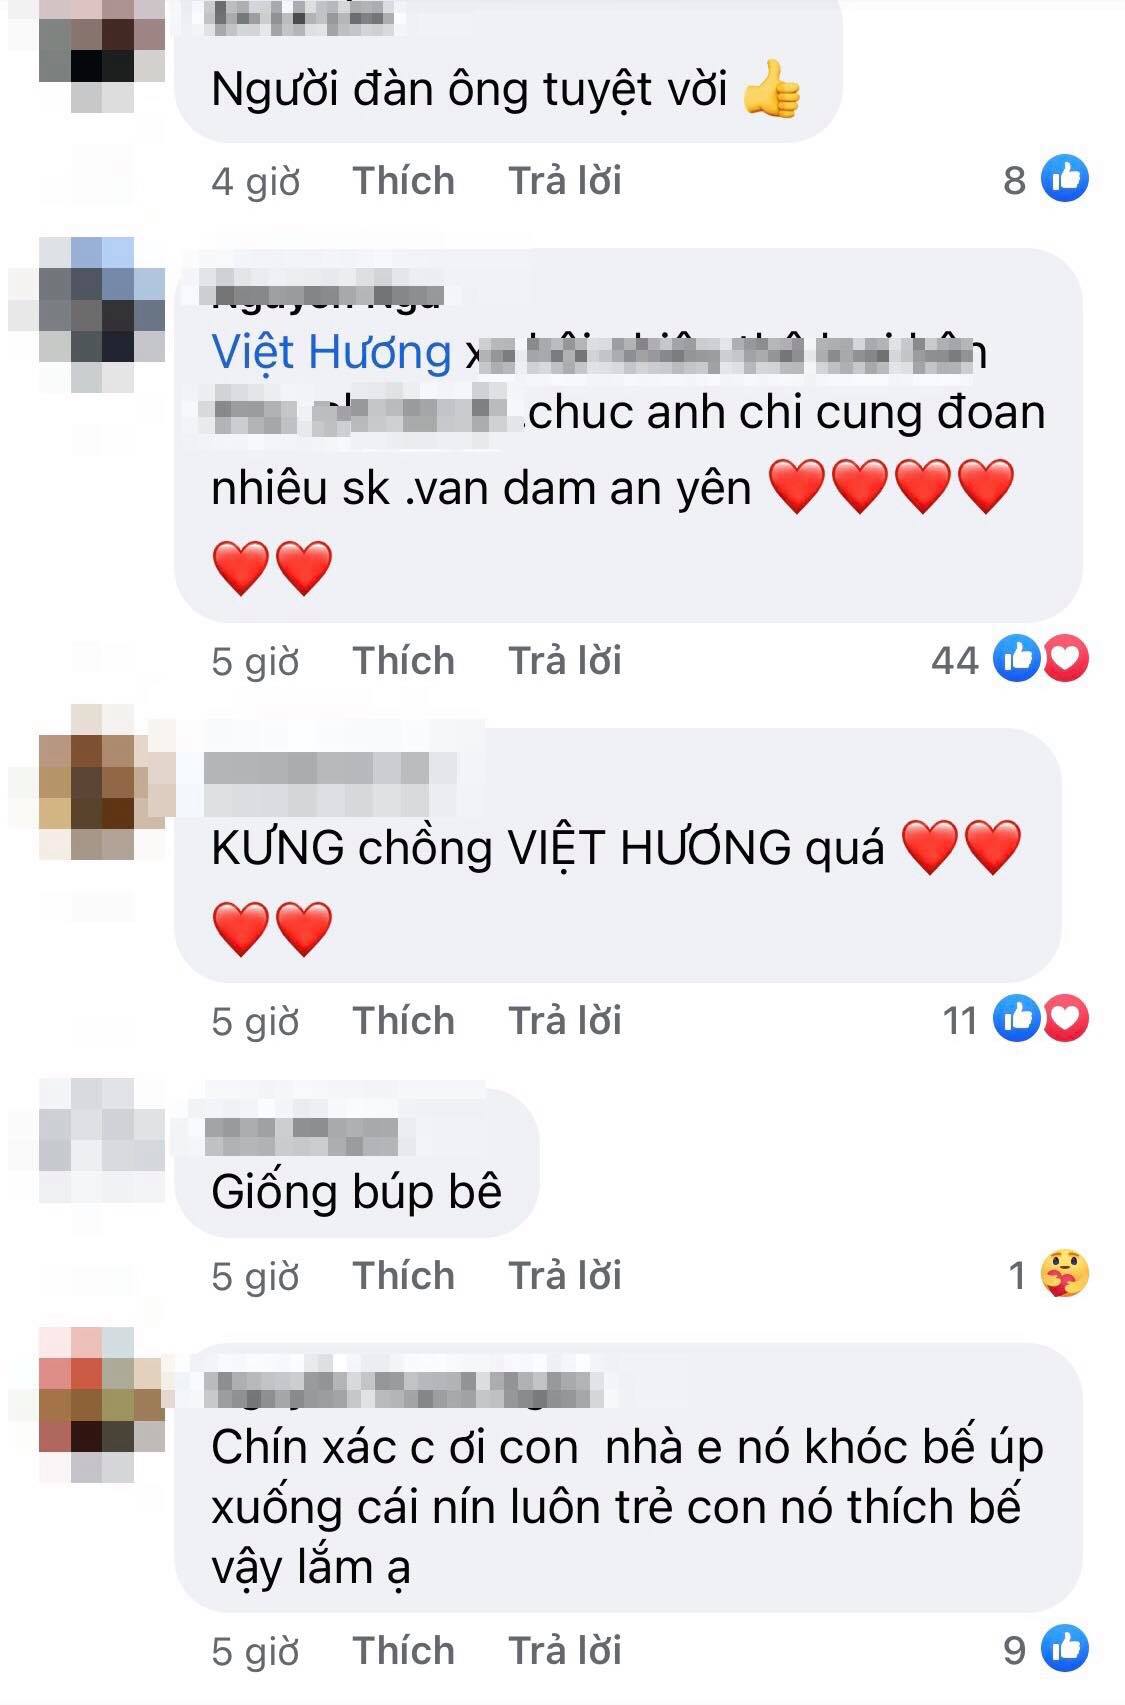 Viet Huong 2